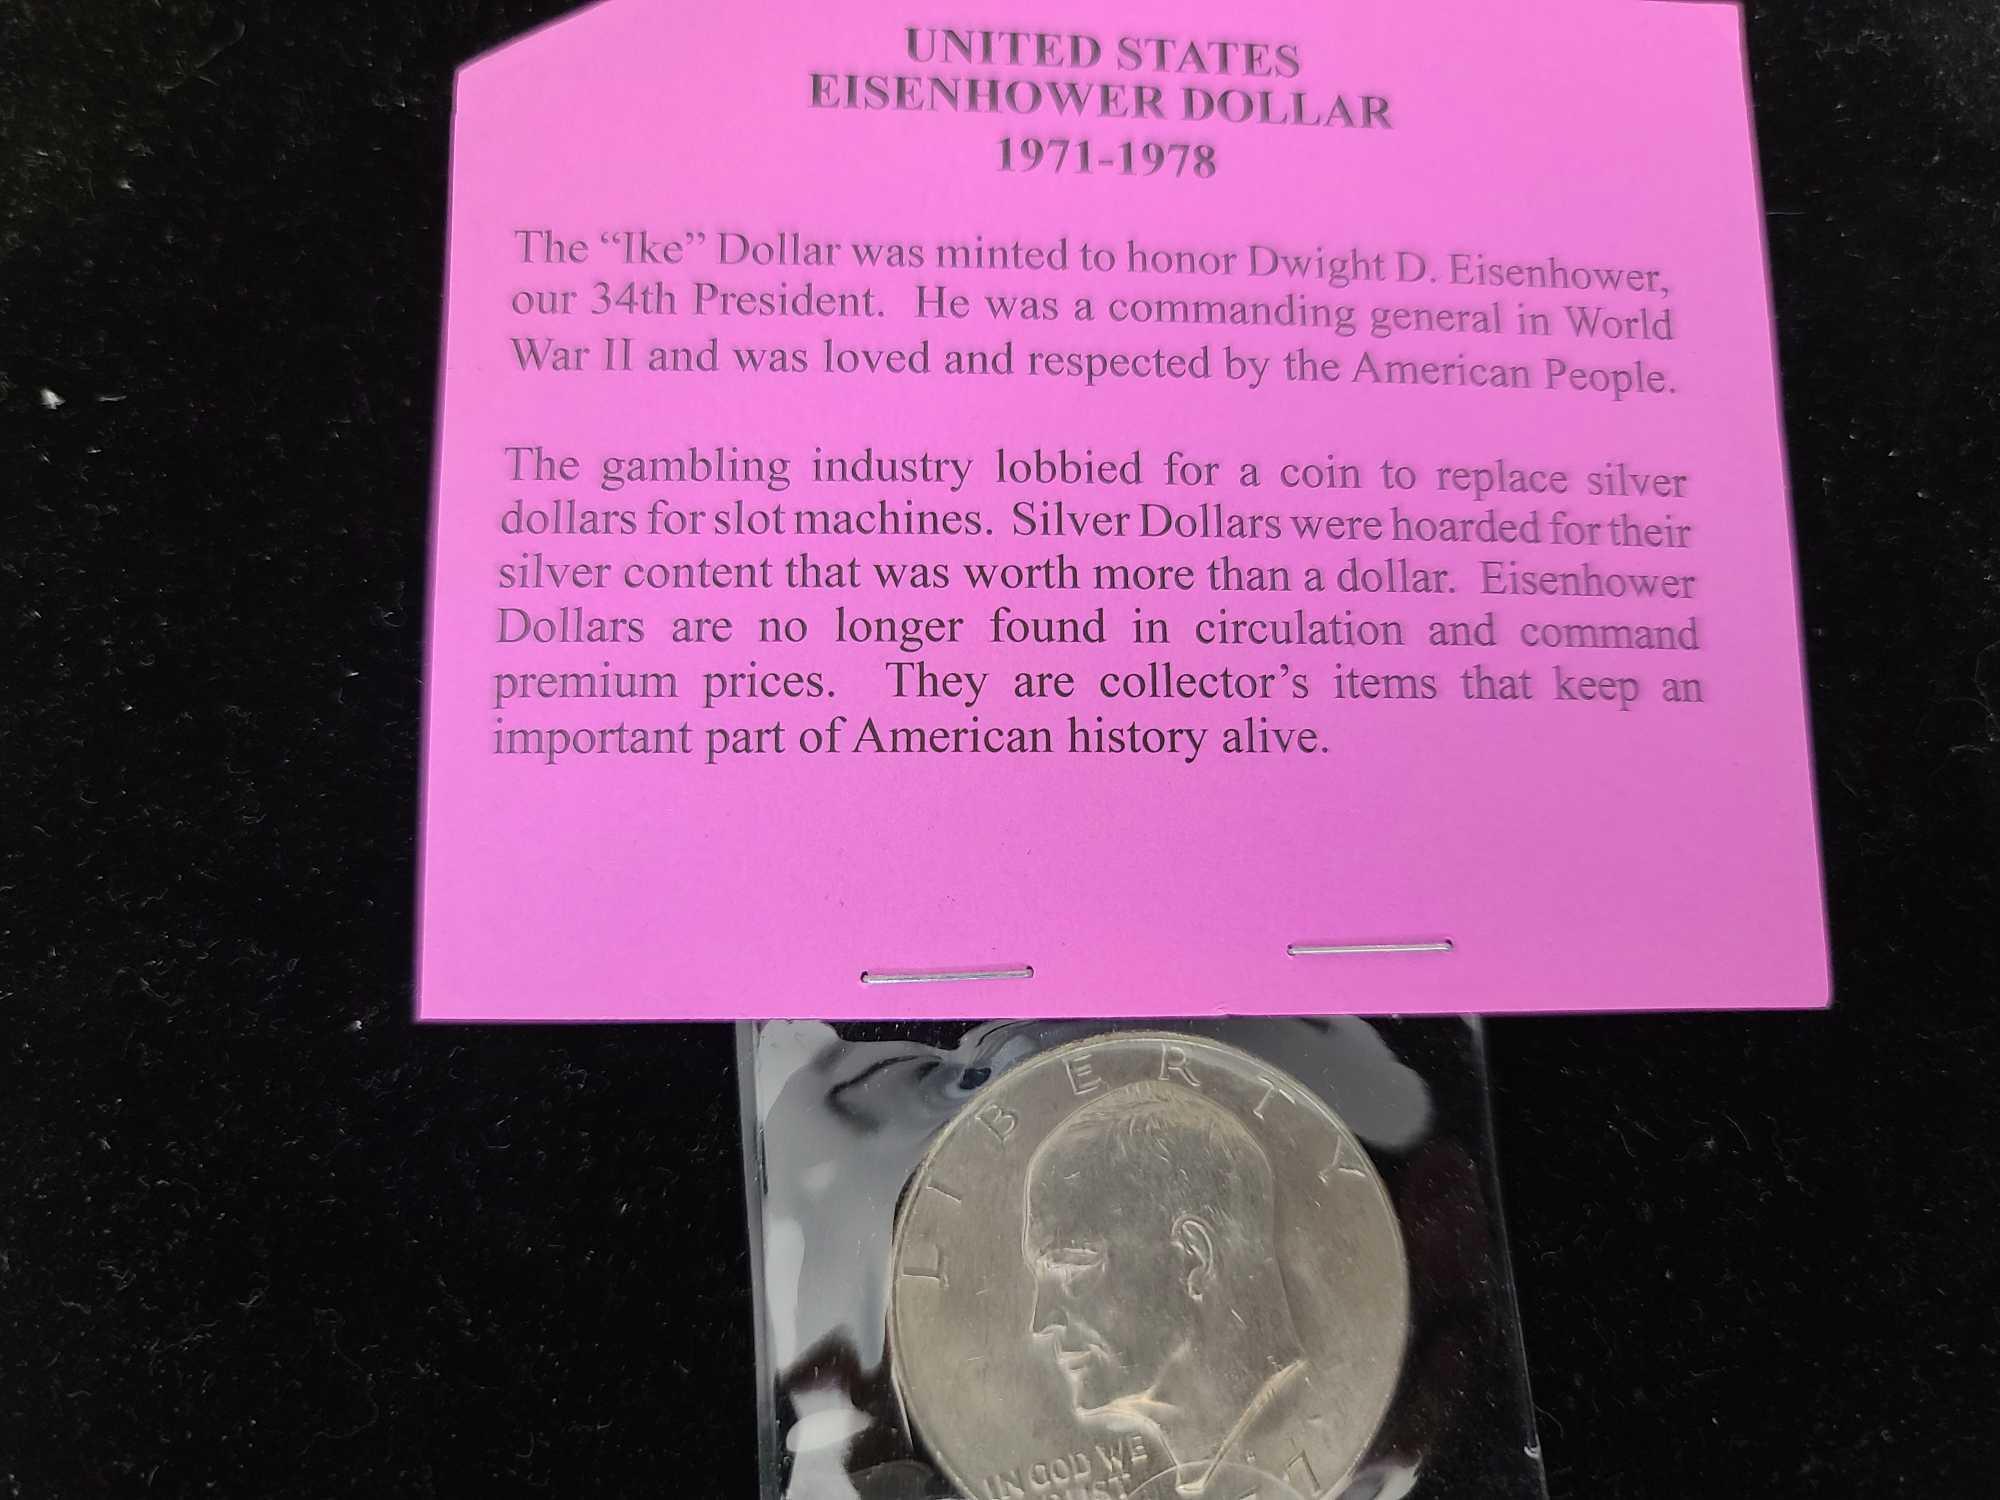 Kennedy Half Dollar, Eisen Hower Dollar Coin, Kennedy Brilliant Uncirculated Half Dollar & Treasury